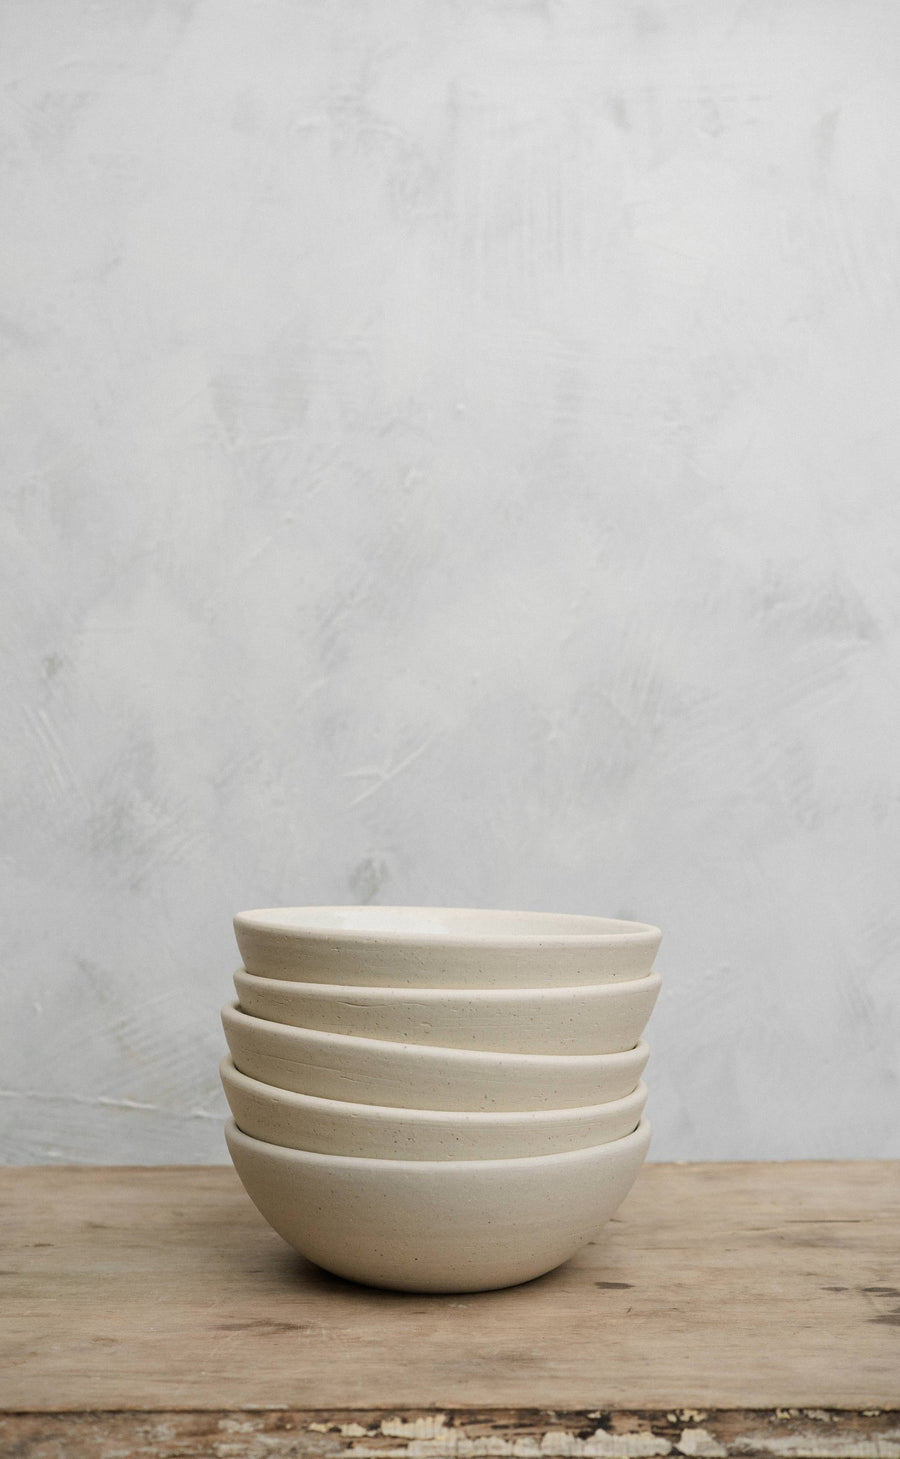 Pasta bowl by Atelier Tréma 